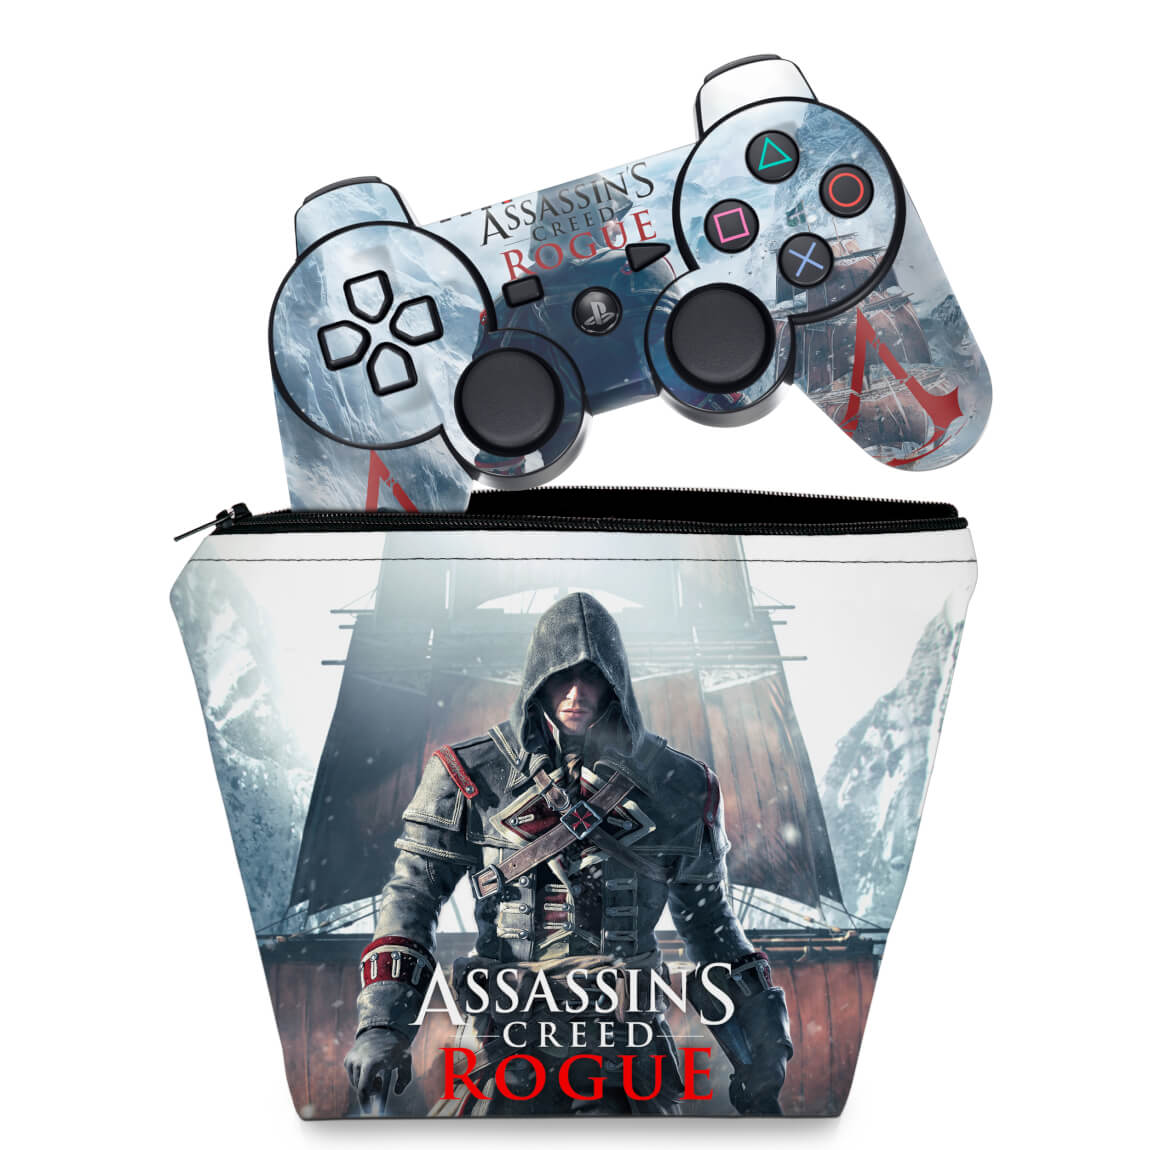 Assassin's Creed Rogue - PlayStation 3